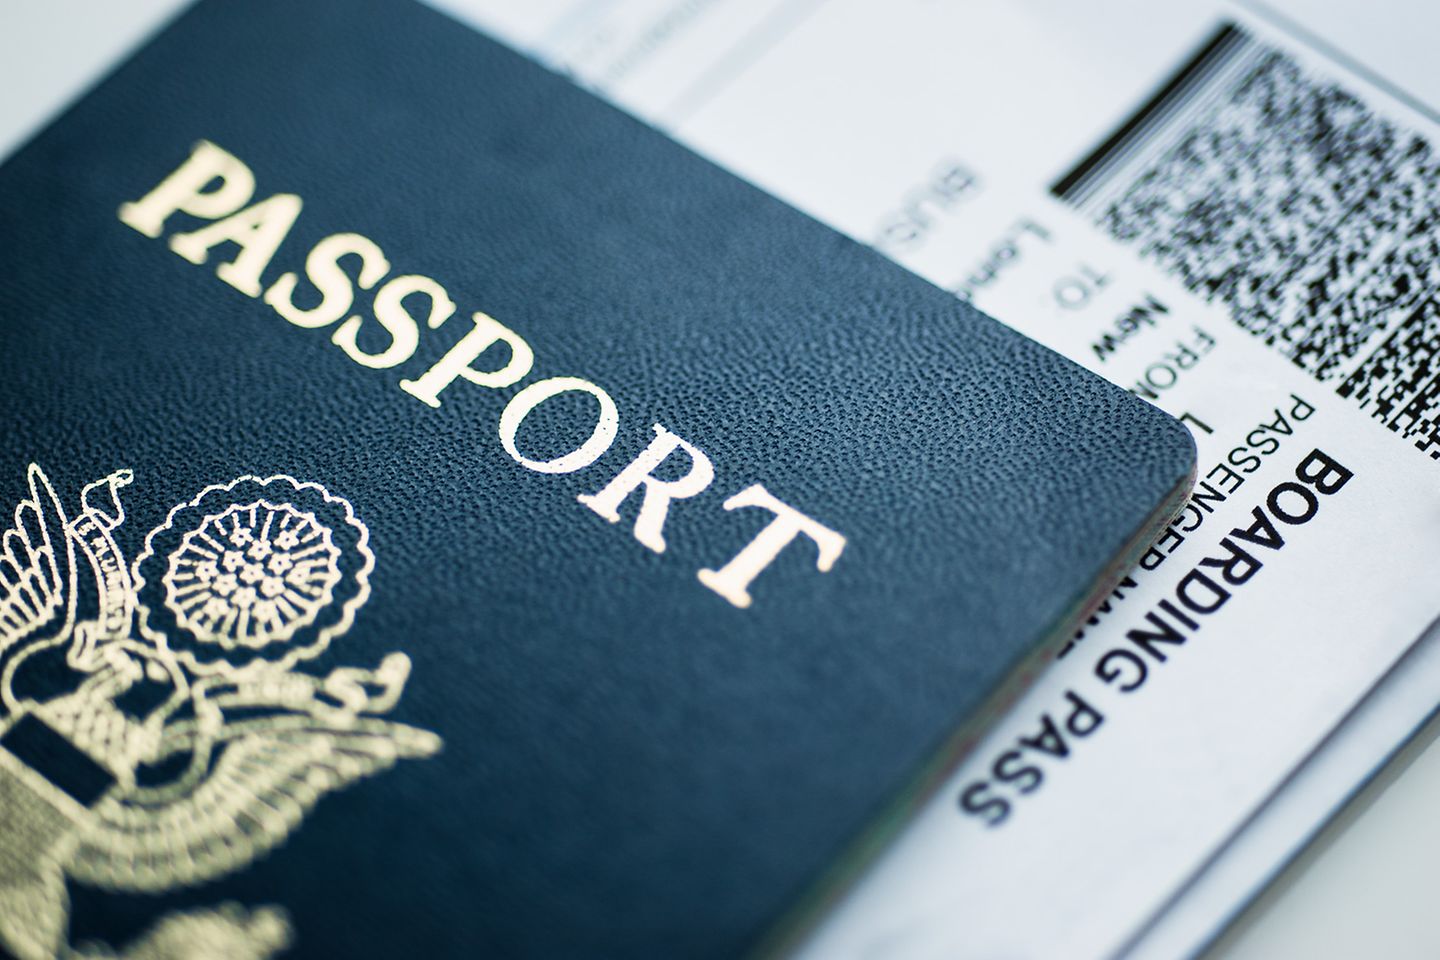 Un passeport est posé sur une carte d’embarquement.